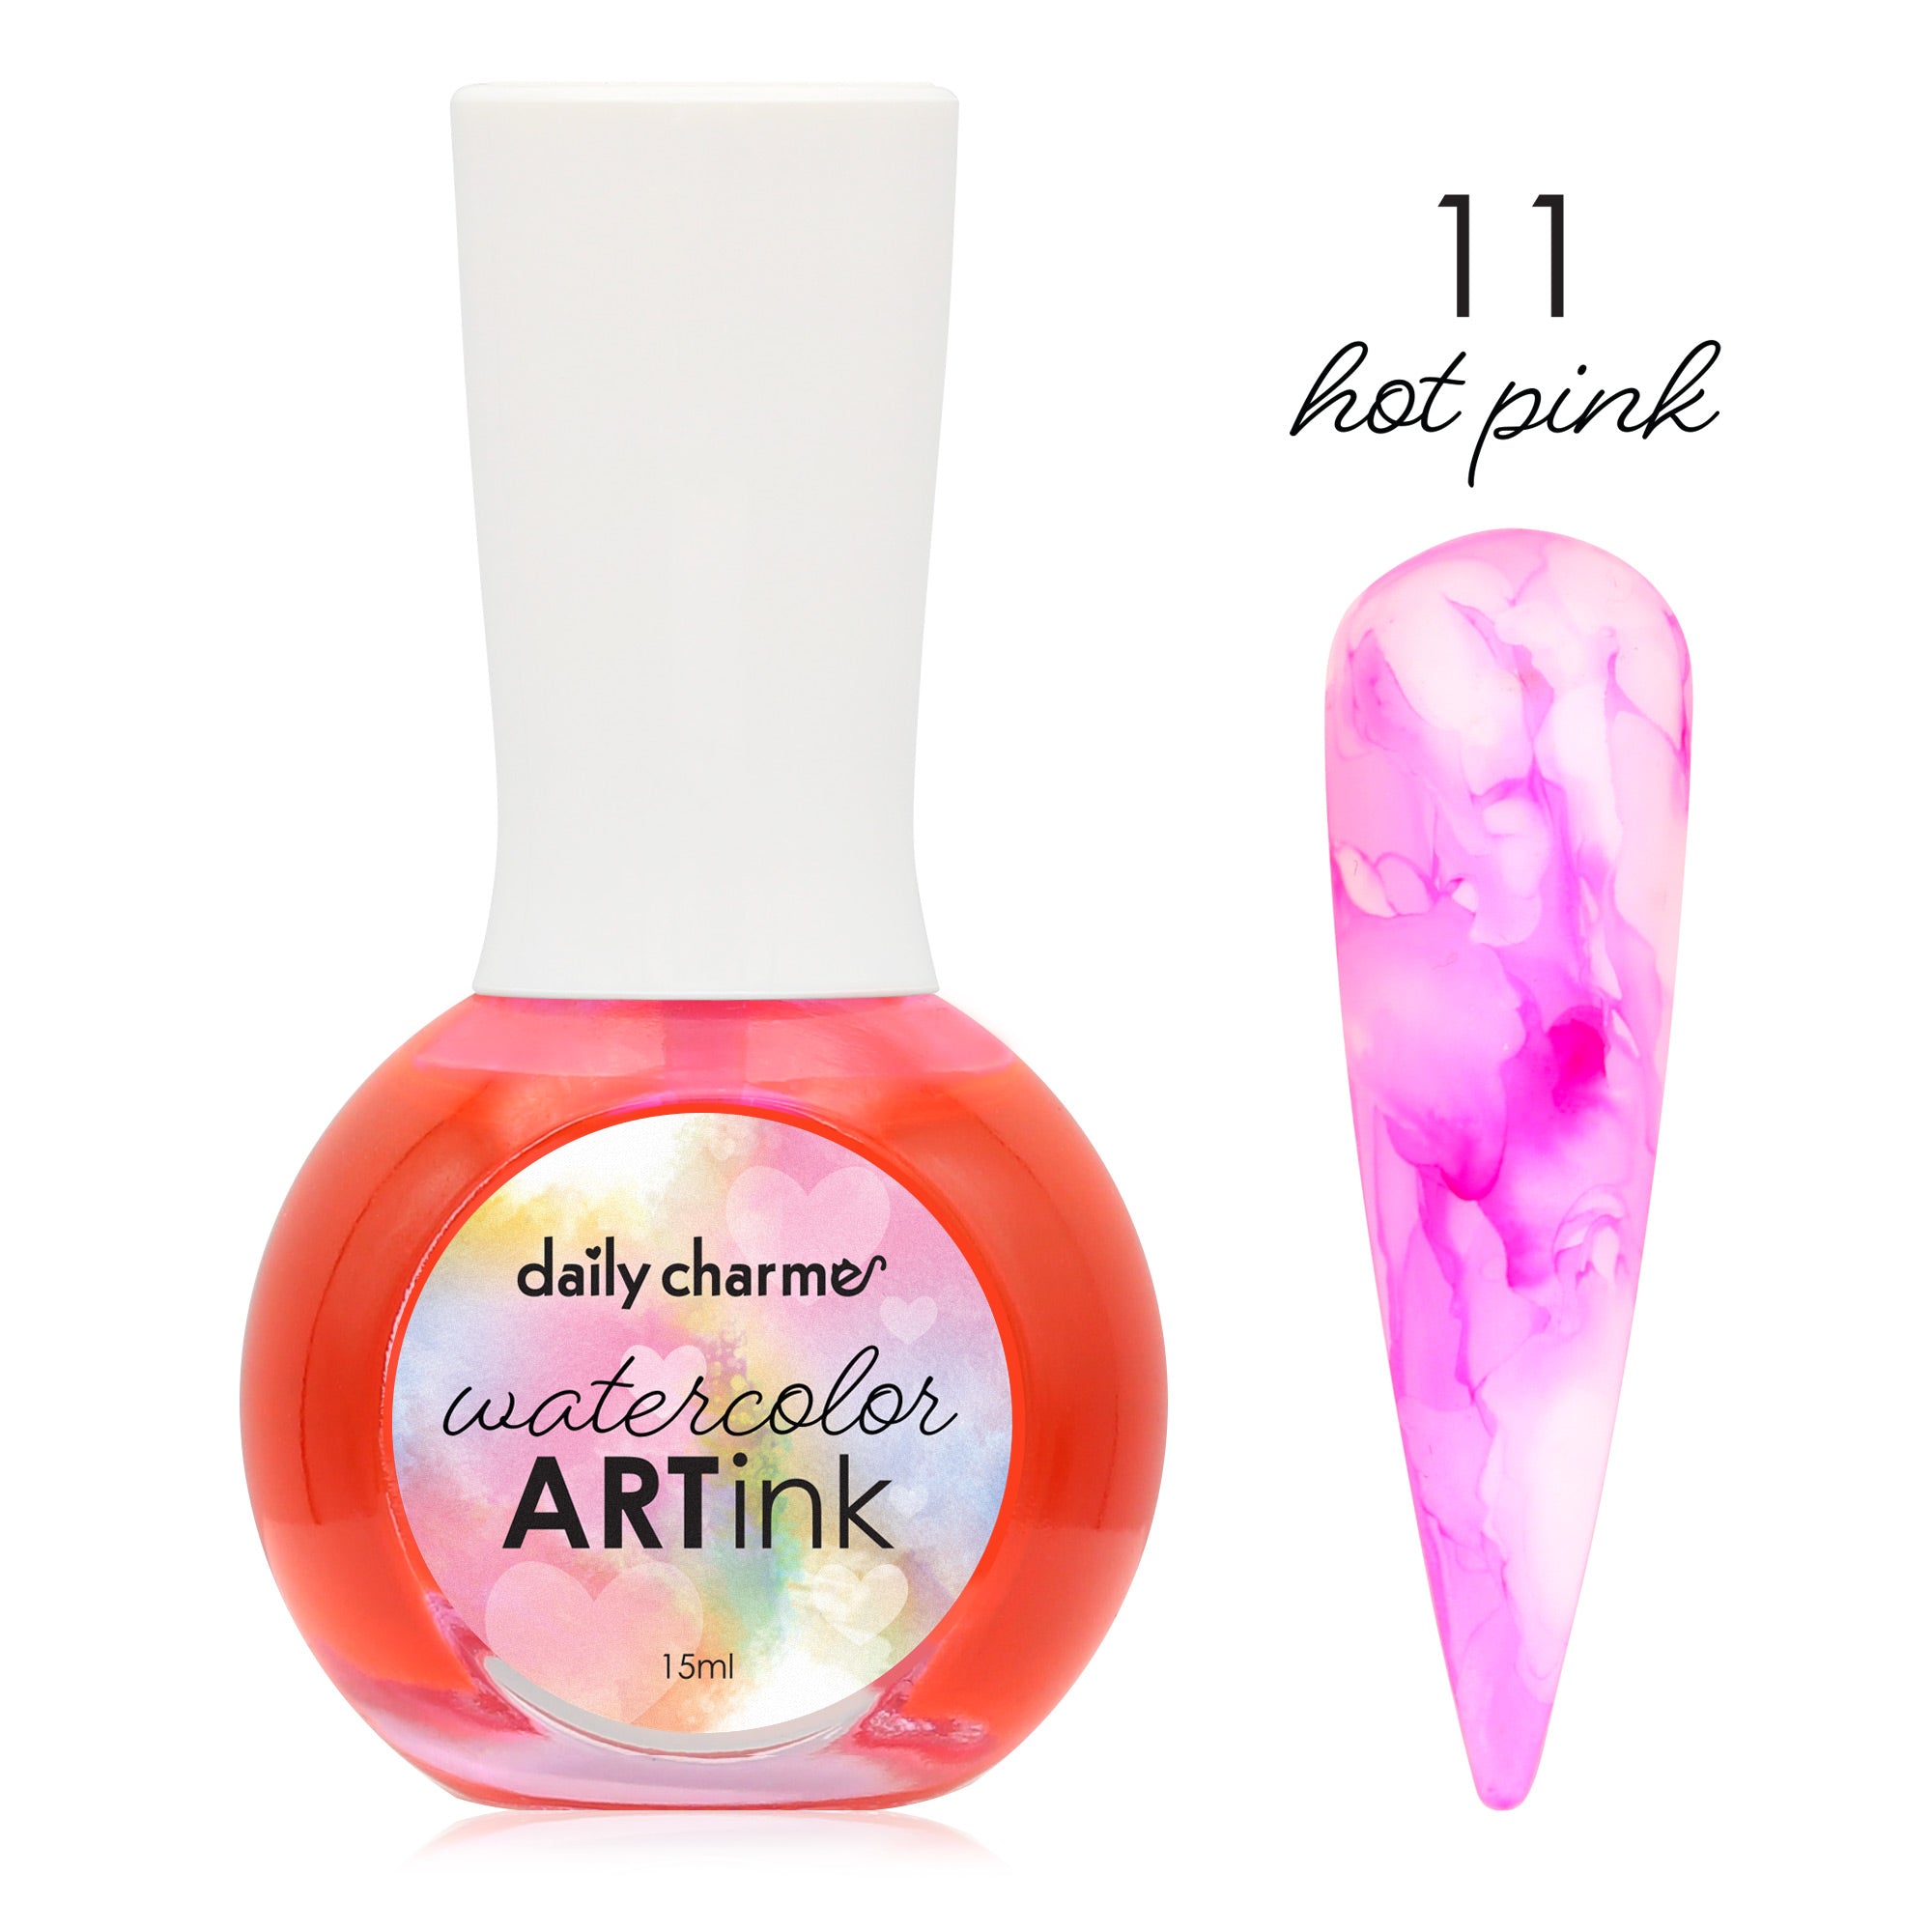 Daily Charme Watercolor Art Ink / 11 Hot Pink Marble Pastel Nail DIY